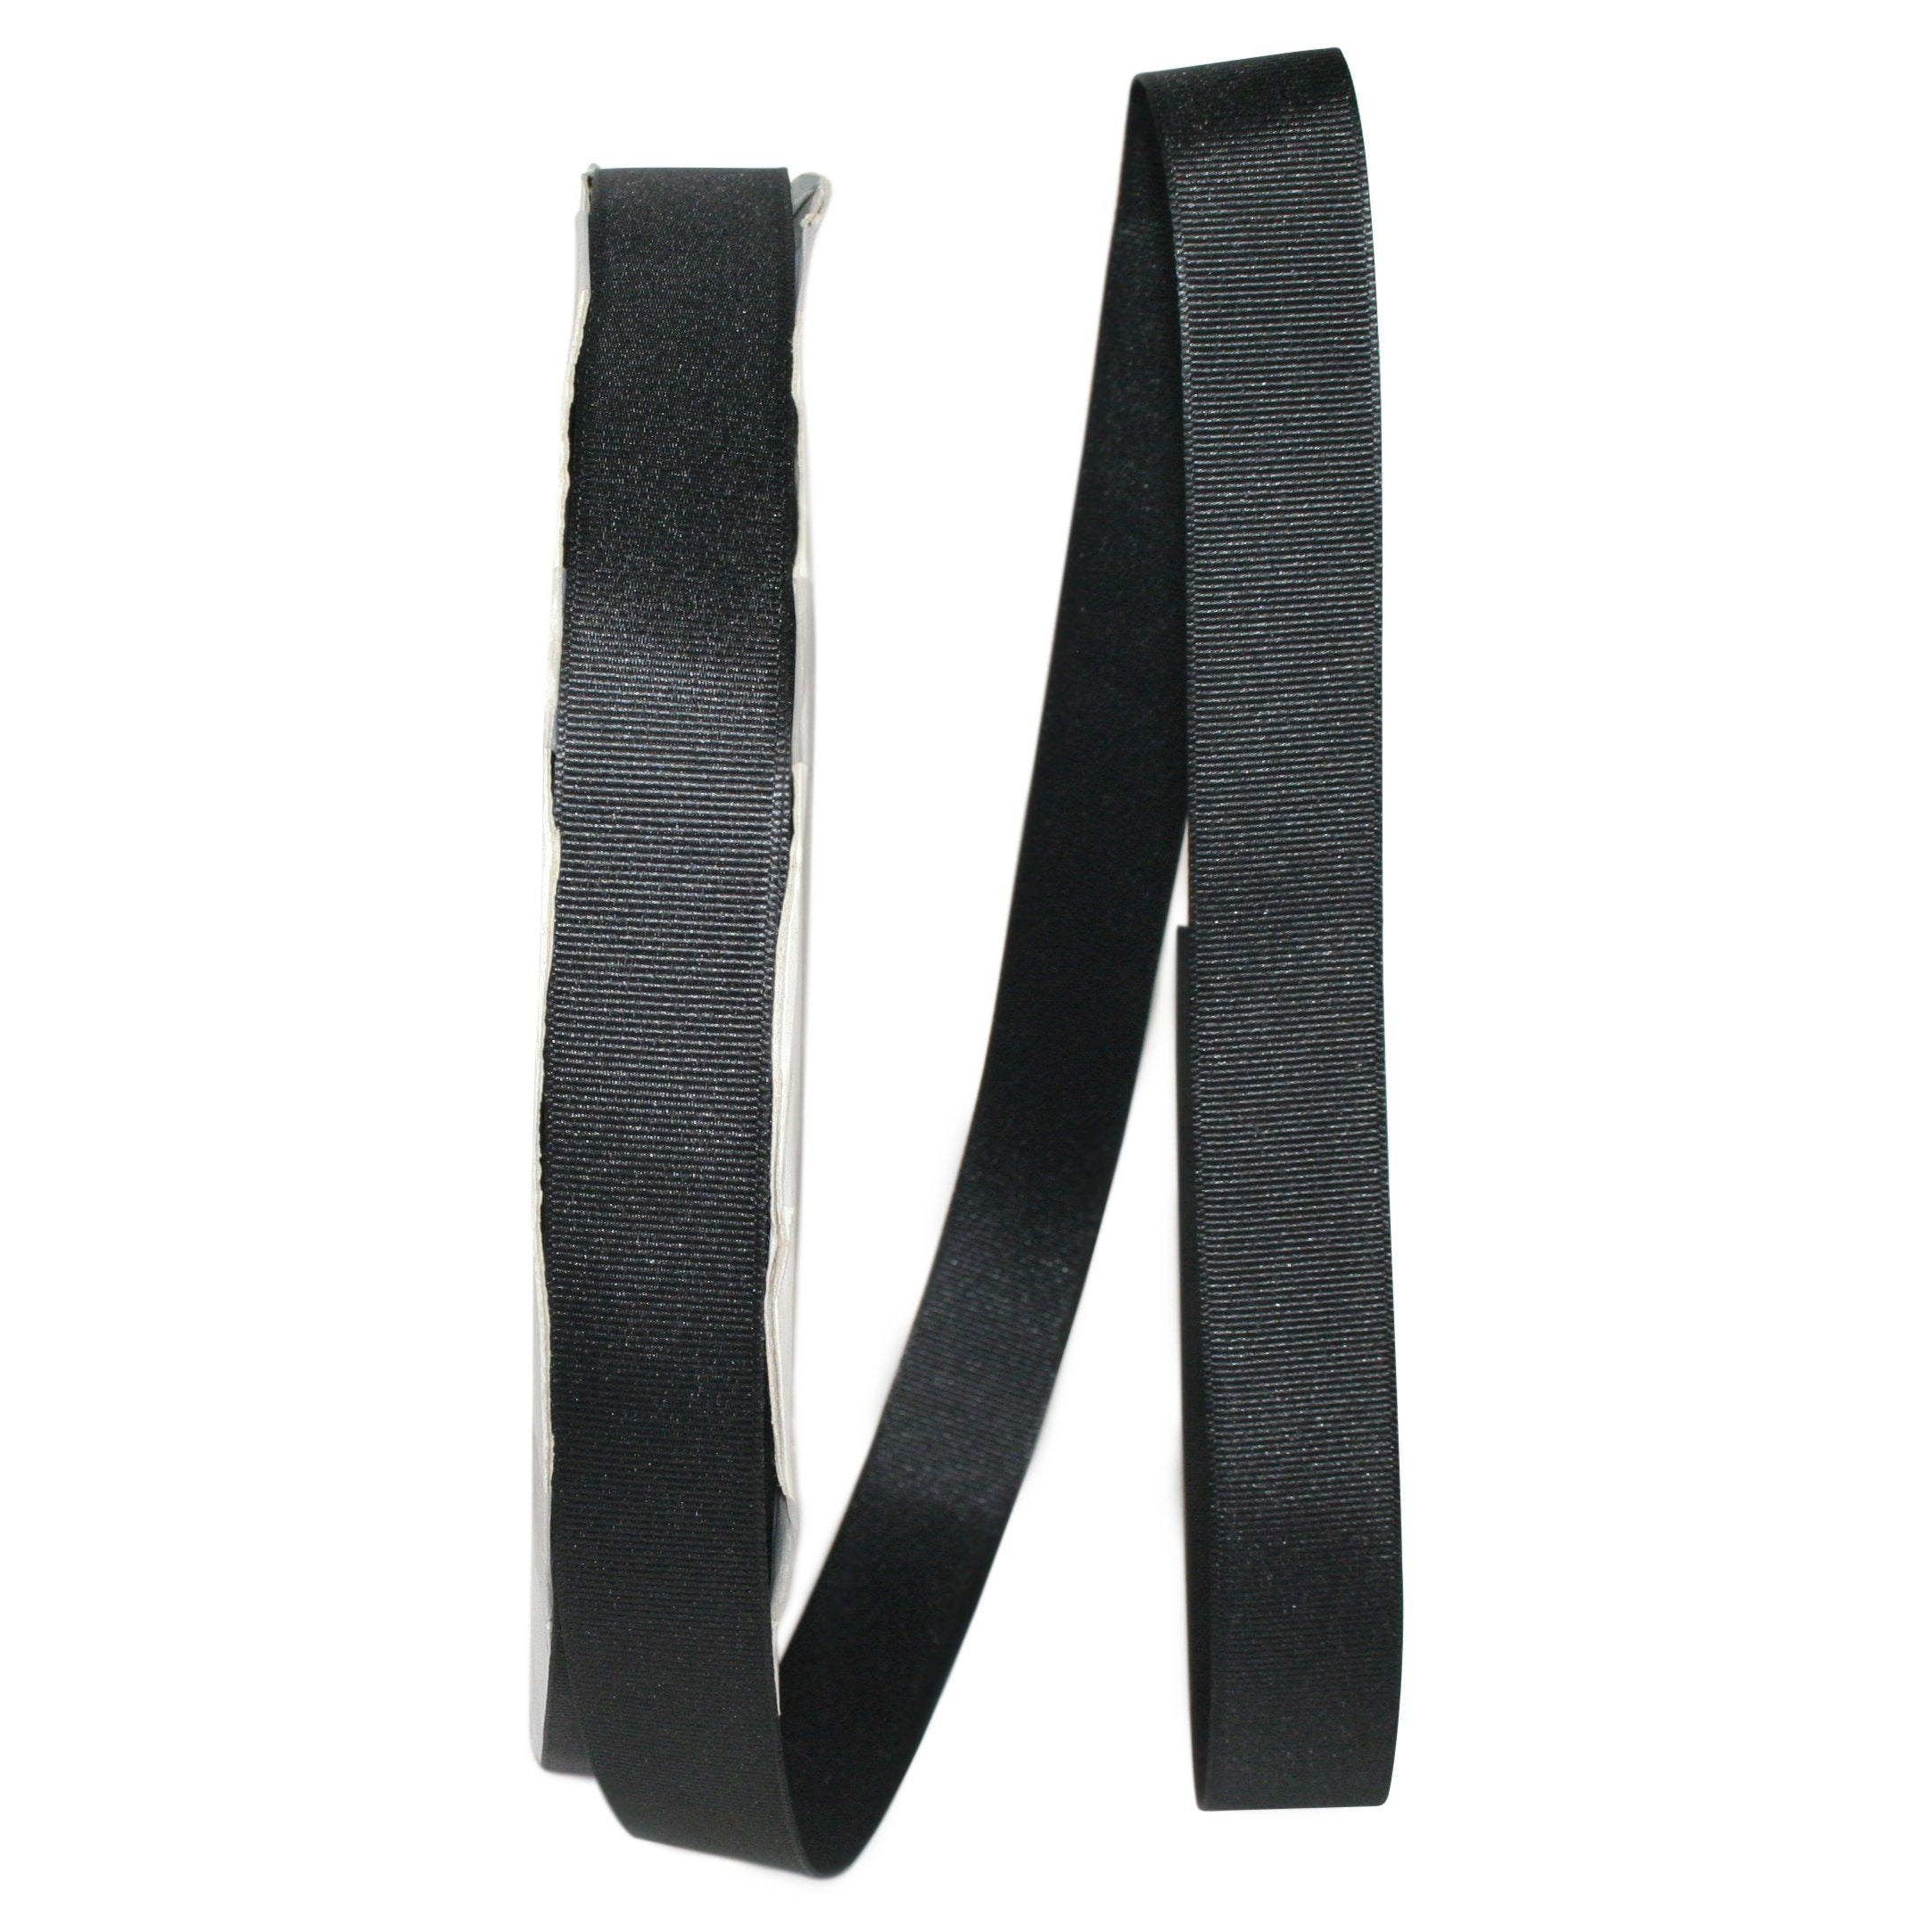 Black and Grey Ribbon Pack